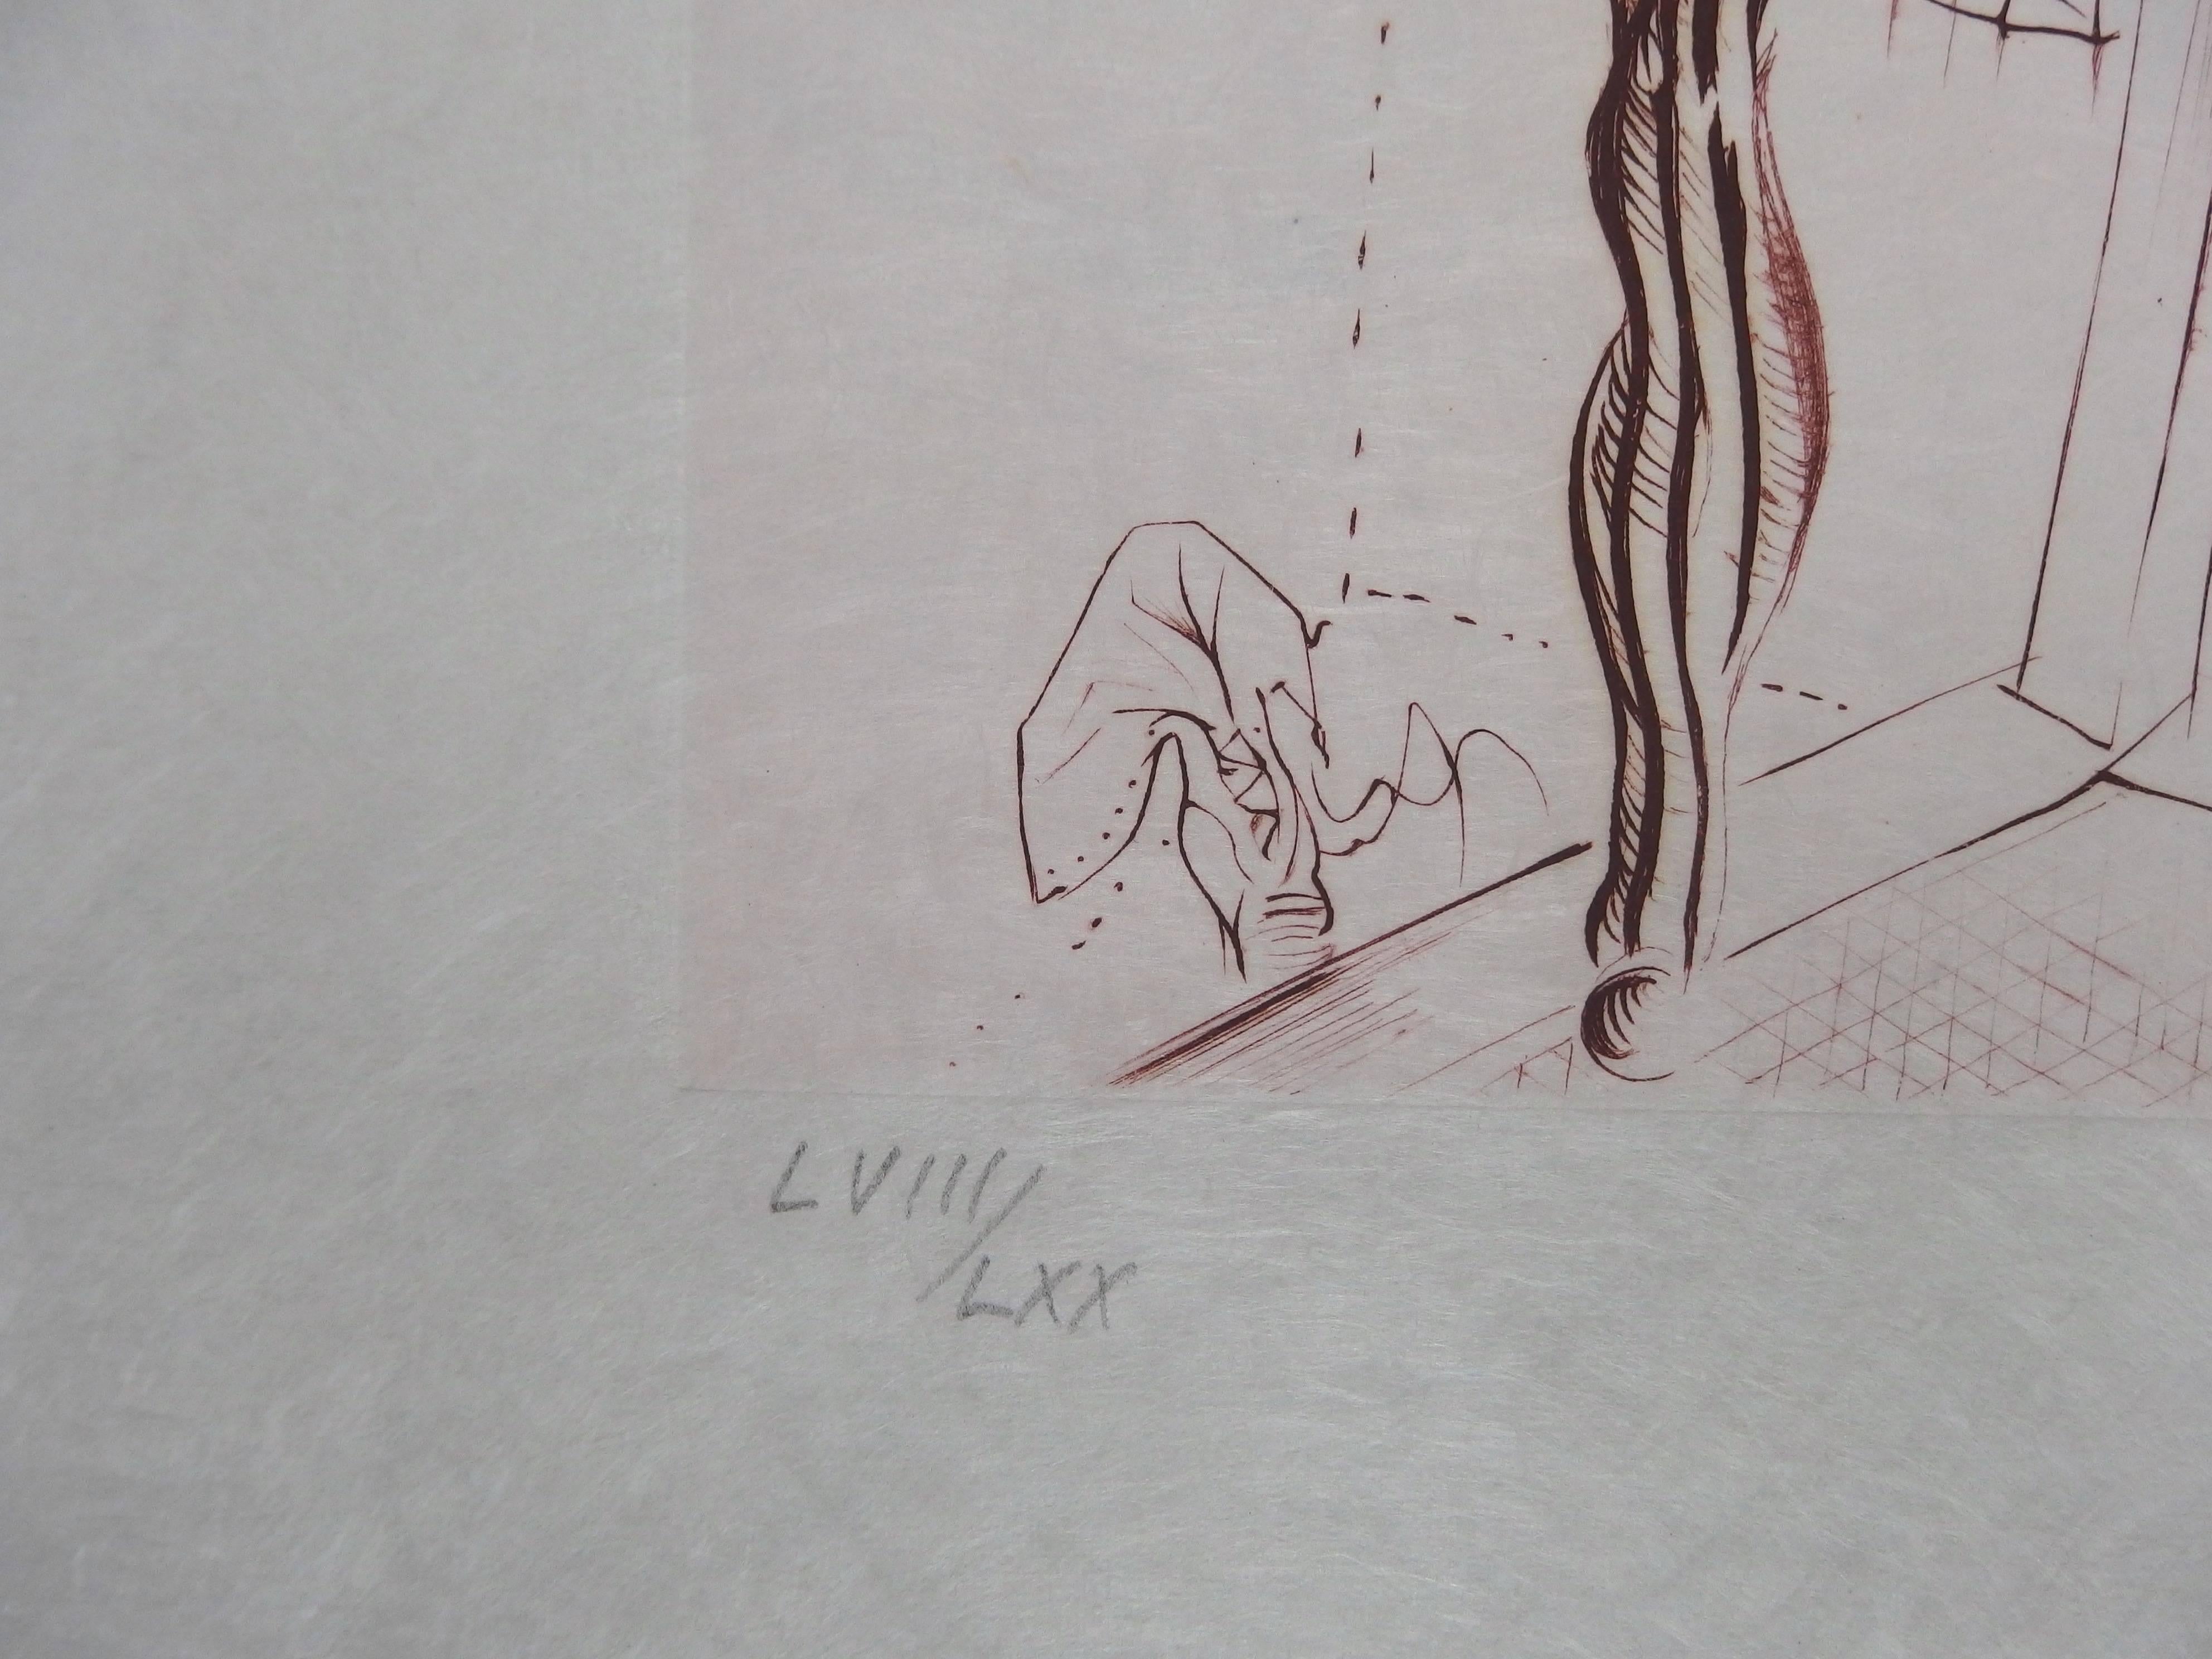 Hans BELLMER
Verträumte Nacktheit 

Original-Radierung
Handsigniert mit Bleistift
Vom Künstler nummeriert, limitiert auf 70 Exemplare
Auf Japanpapier 67,5 x 51,5 cm (26,5 x 20